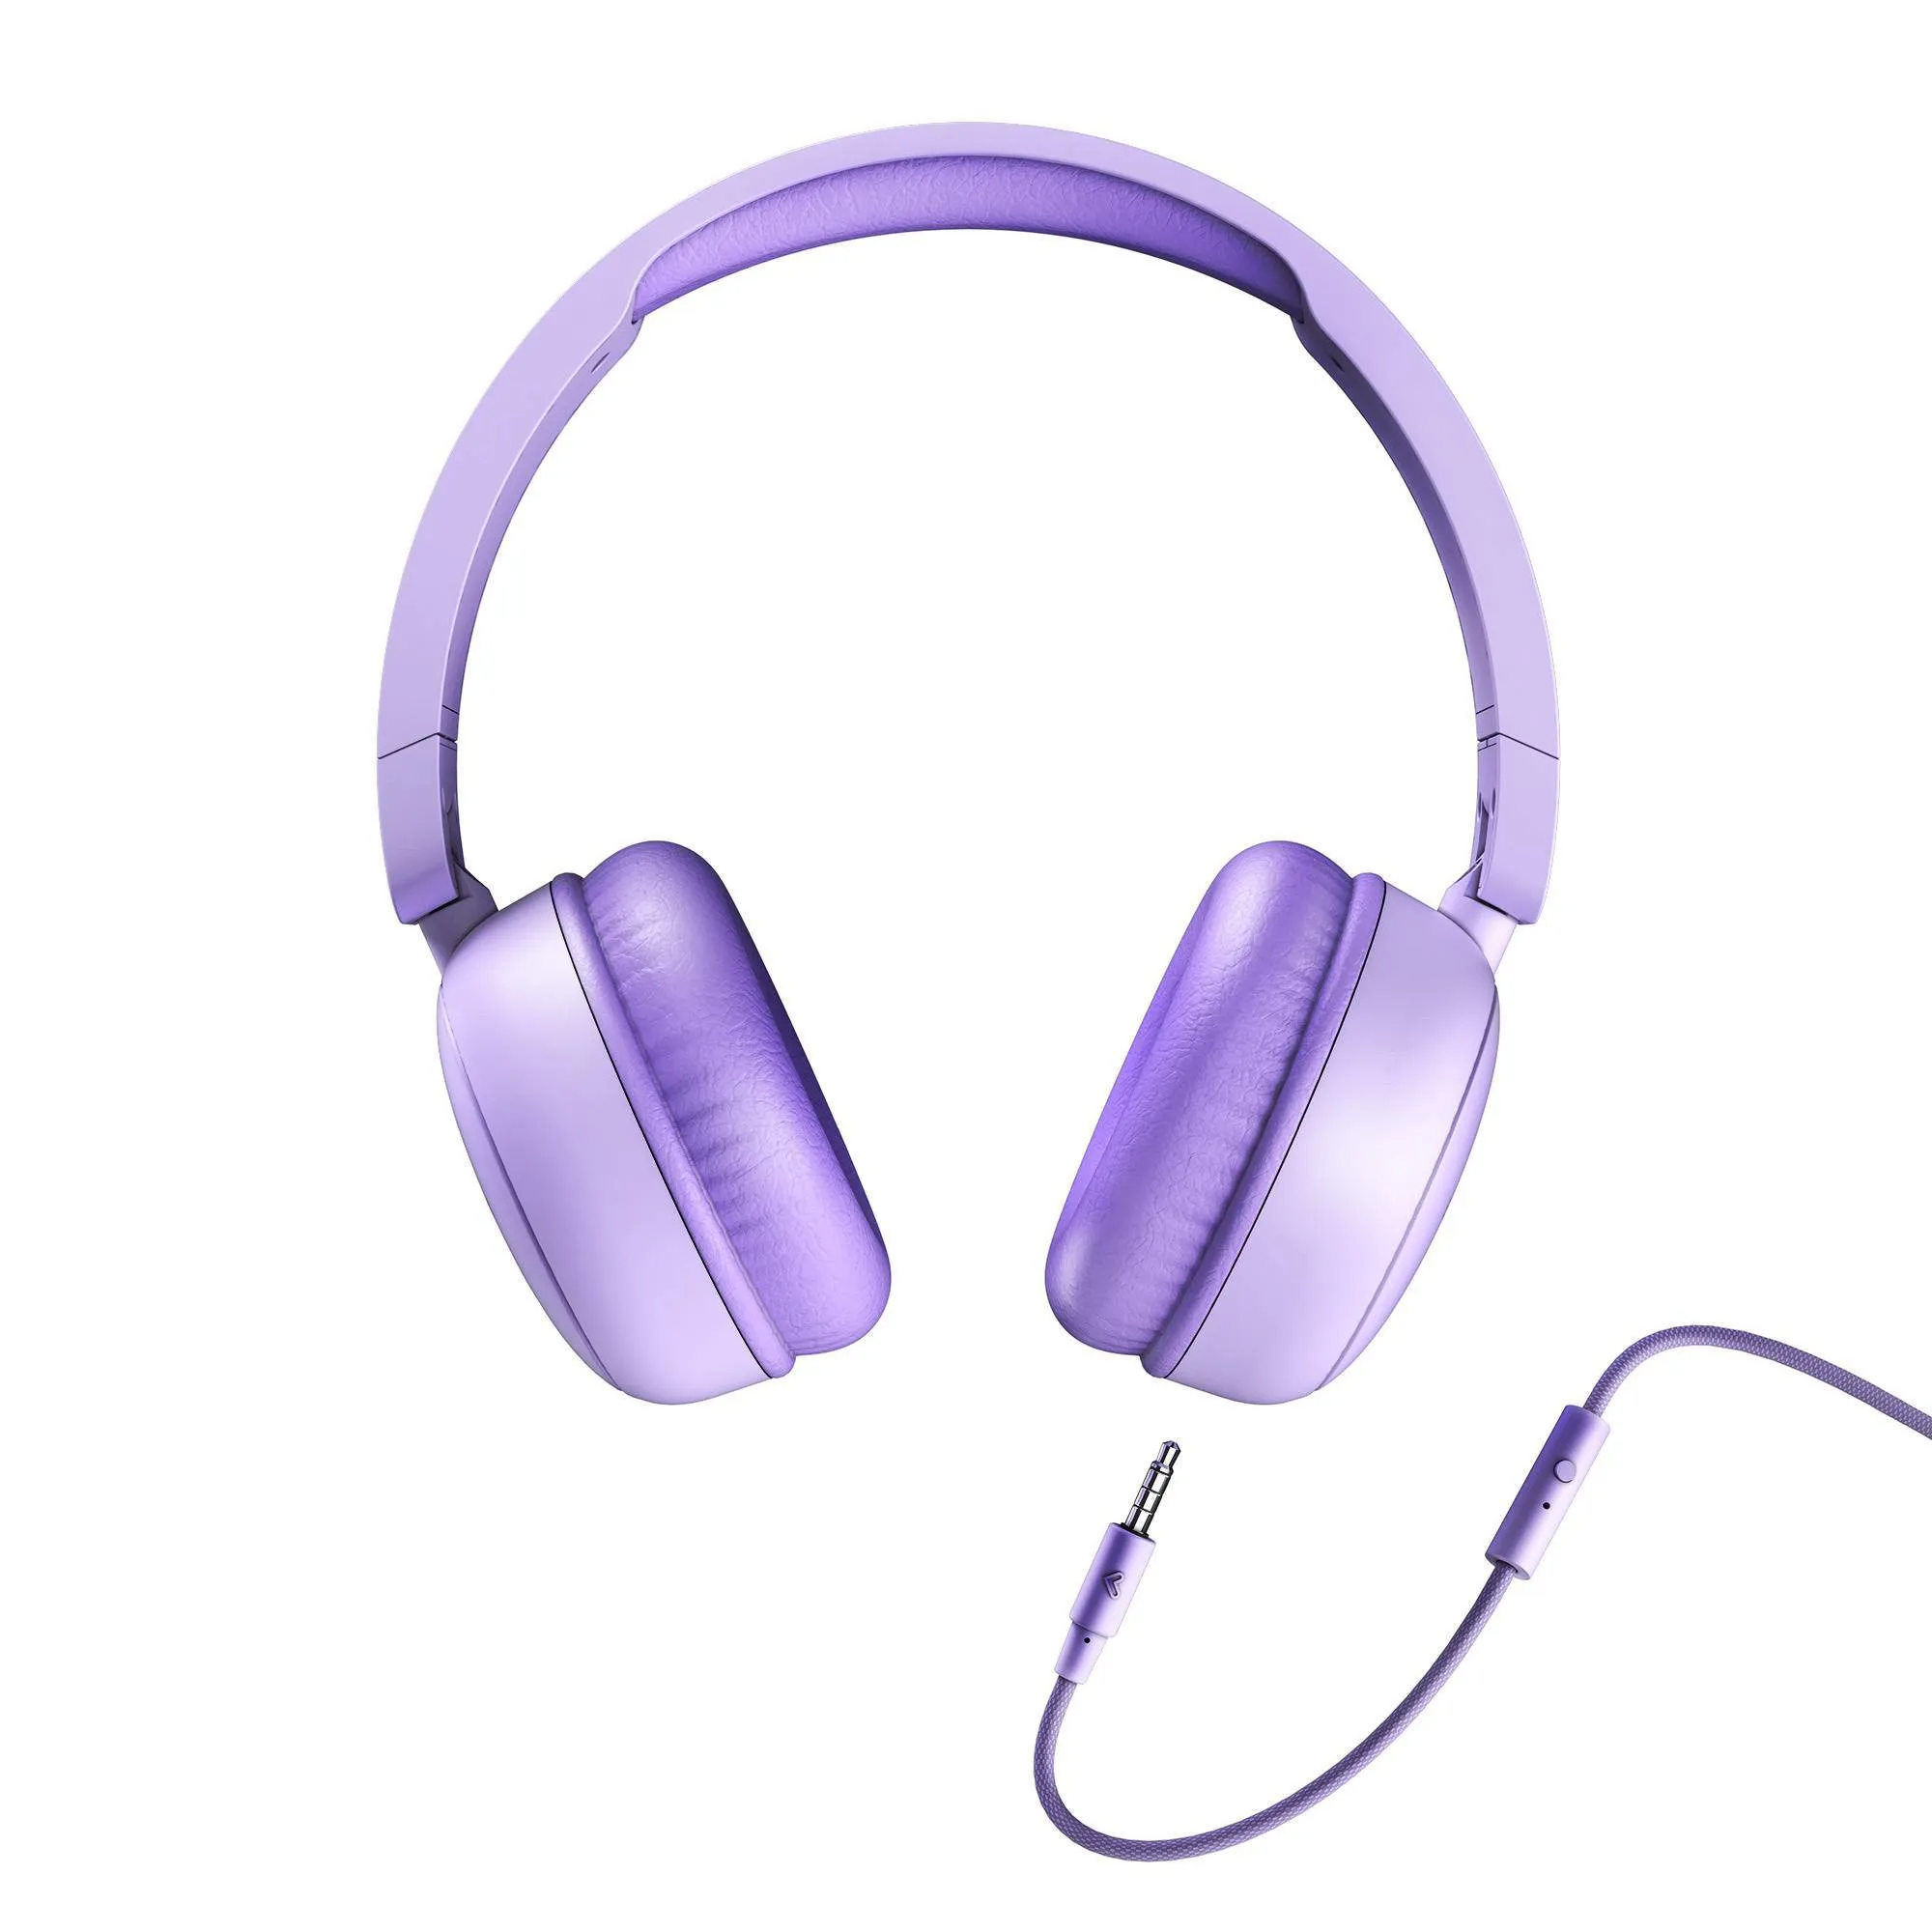 Kopfhörer UrbanTune mit abtrennbarem Kabel für mehr Komfort und Sicherheit